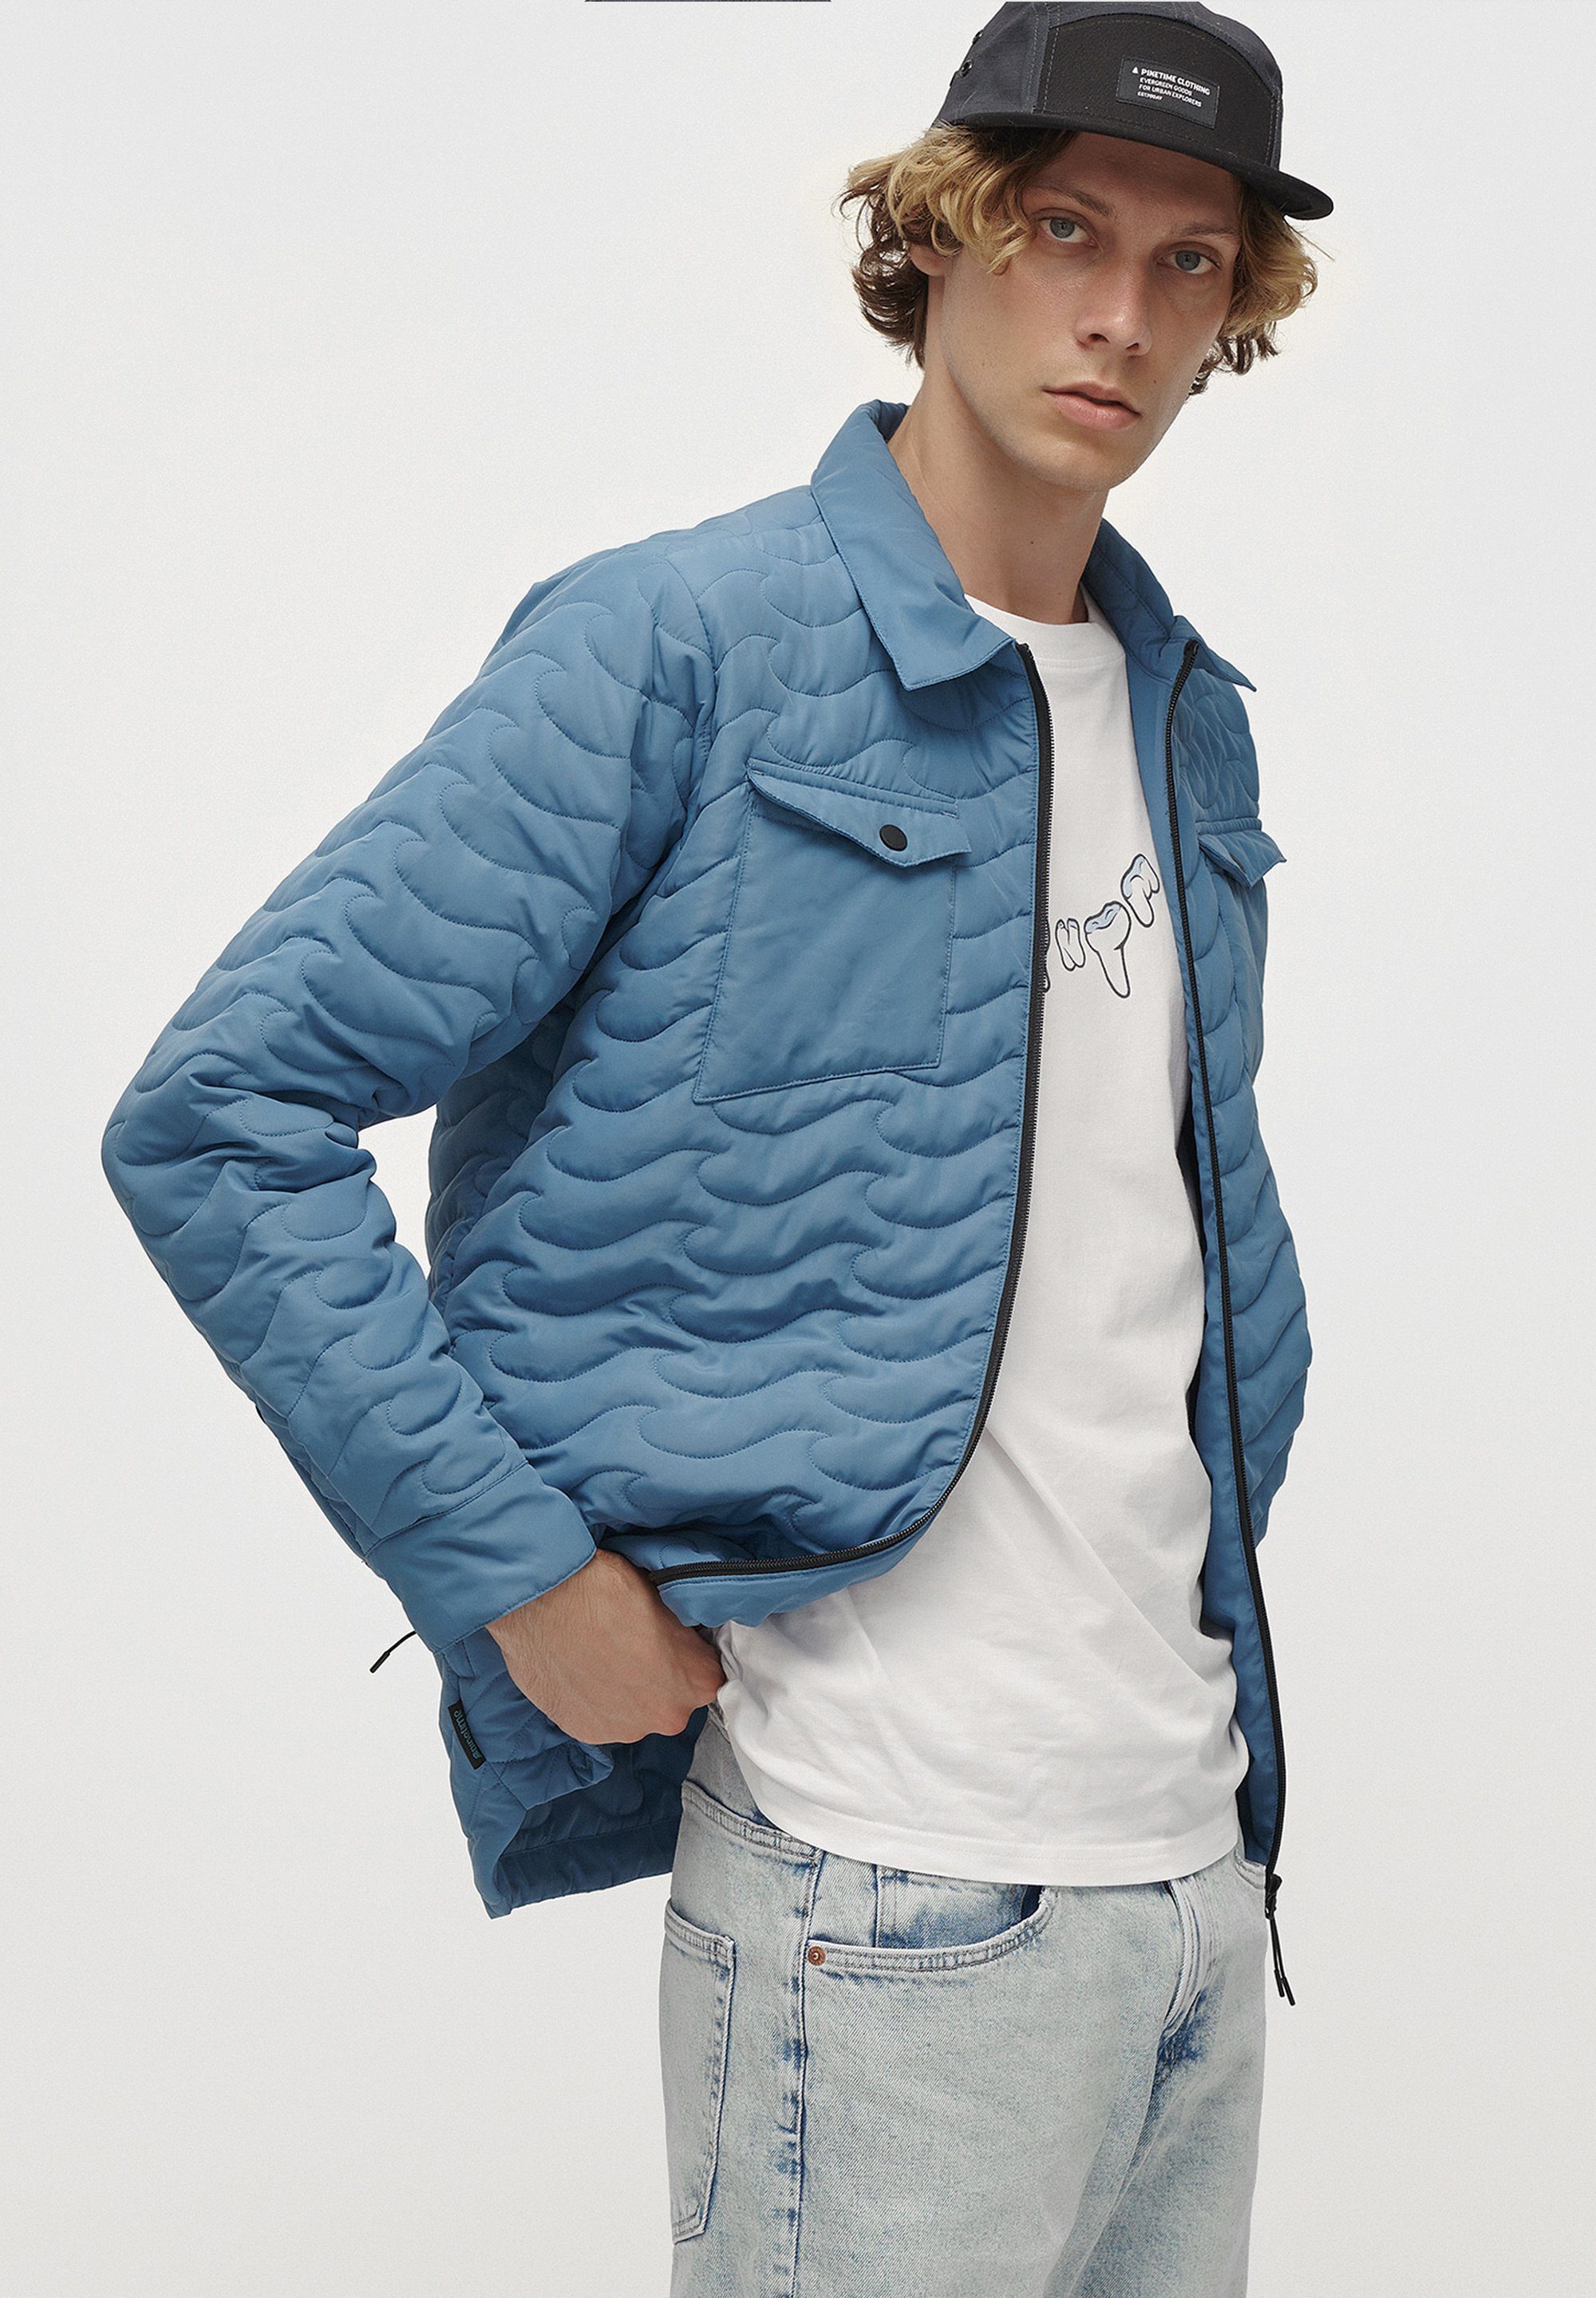 Pinetime Clothing Steppjacke New Wave Insulated Jacket Mit unserer isolierten Hemdjacke sind Sie stilvoll und warm gekleidet. bluestone